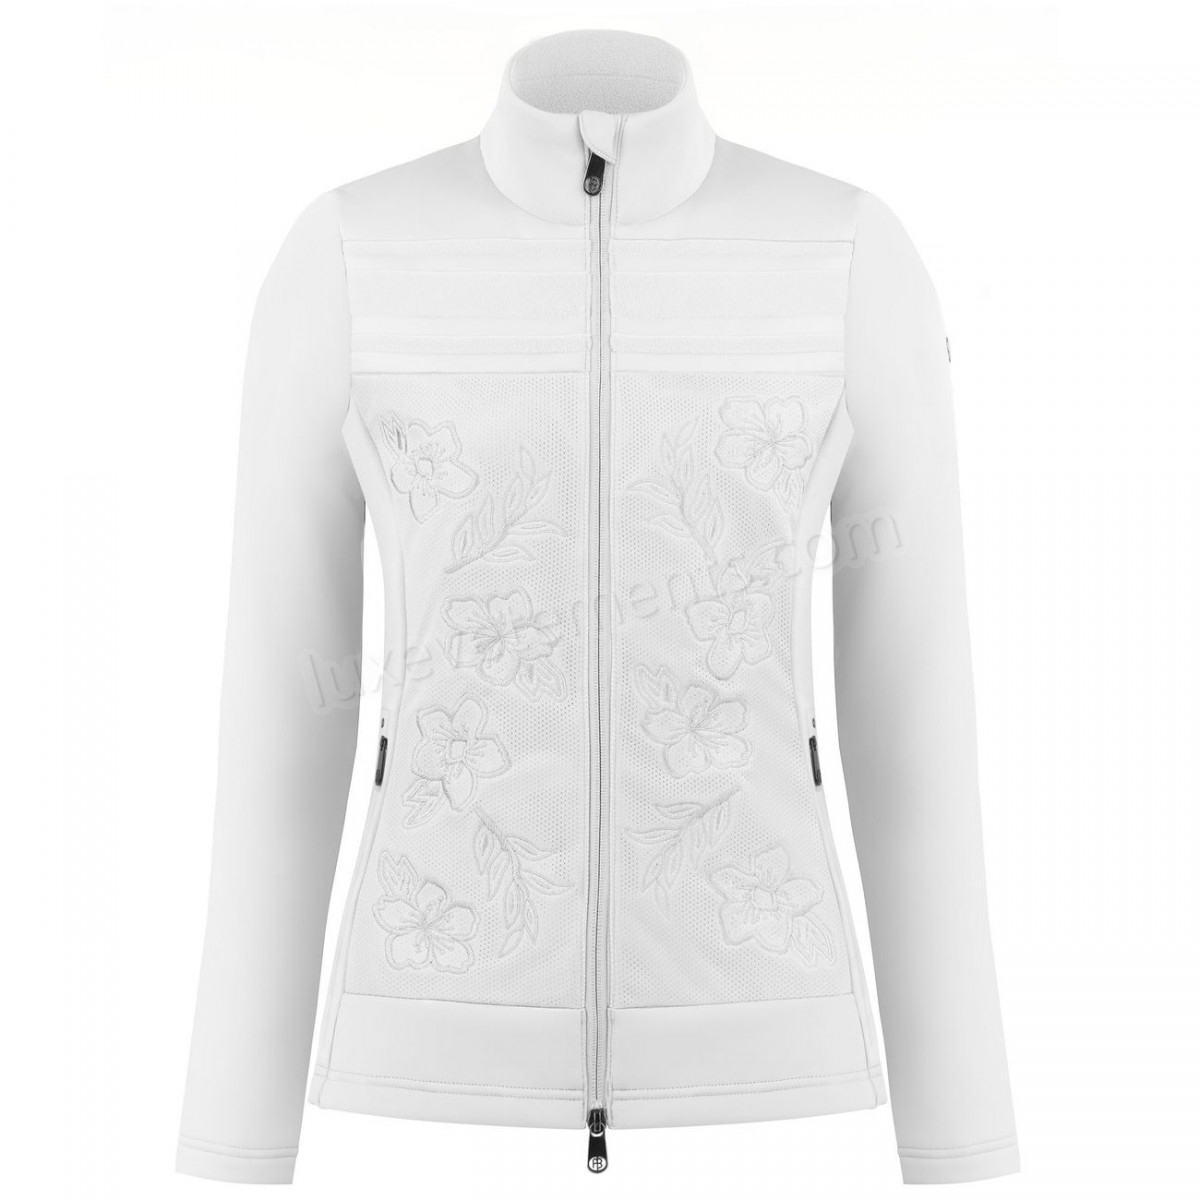 Poivre Blanc-Sports d'hiver femme POIVRE BLANC Veste En Polaire Poivre Blanc Hybrid Stretch Fleece Jacket 1605 White Femme Vente en ligne - -1